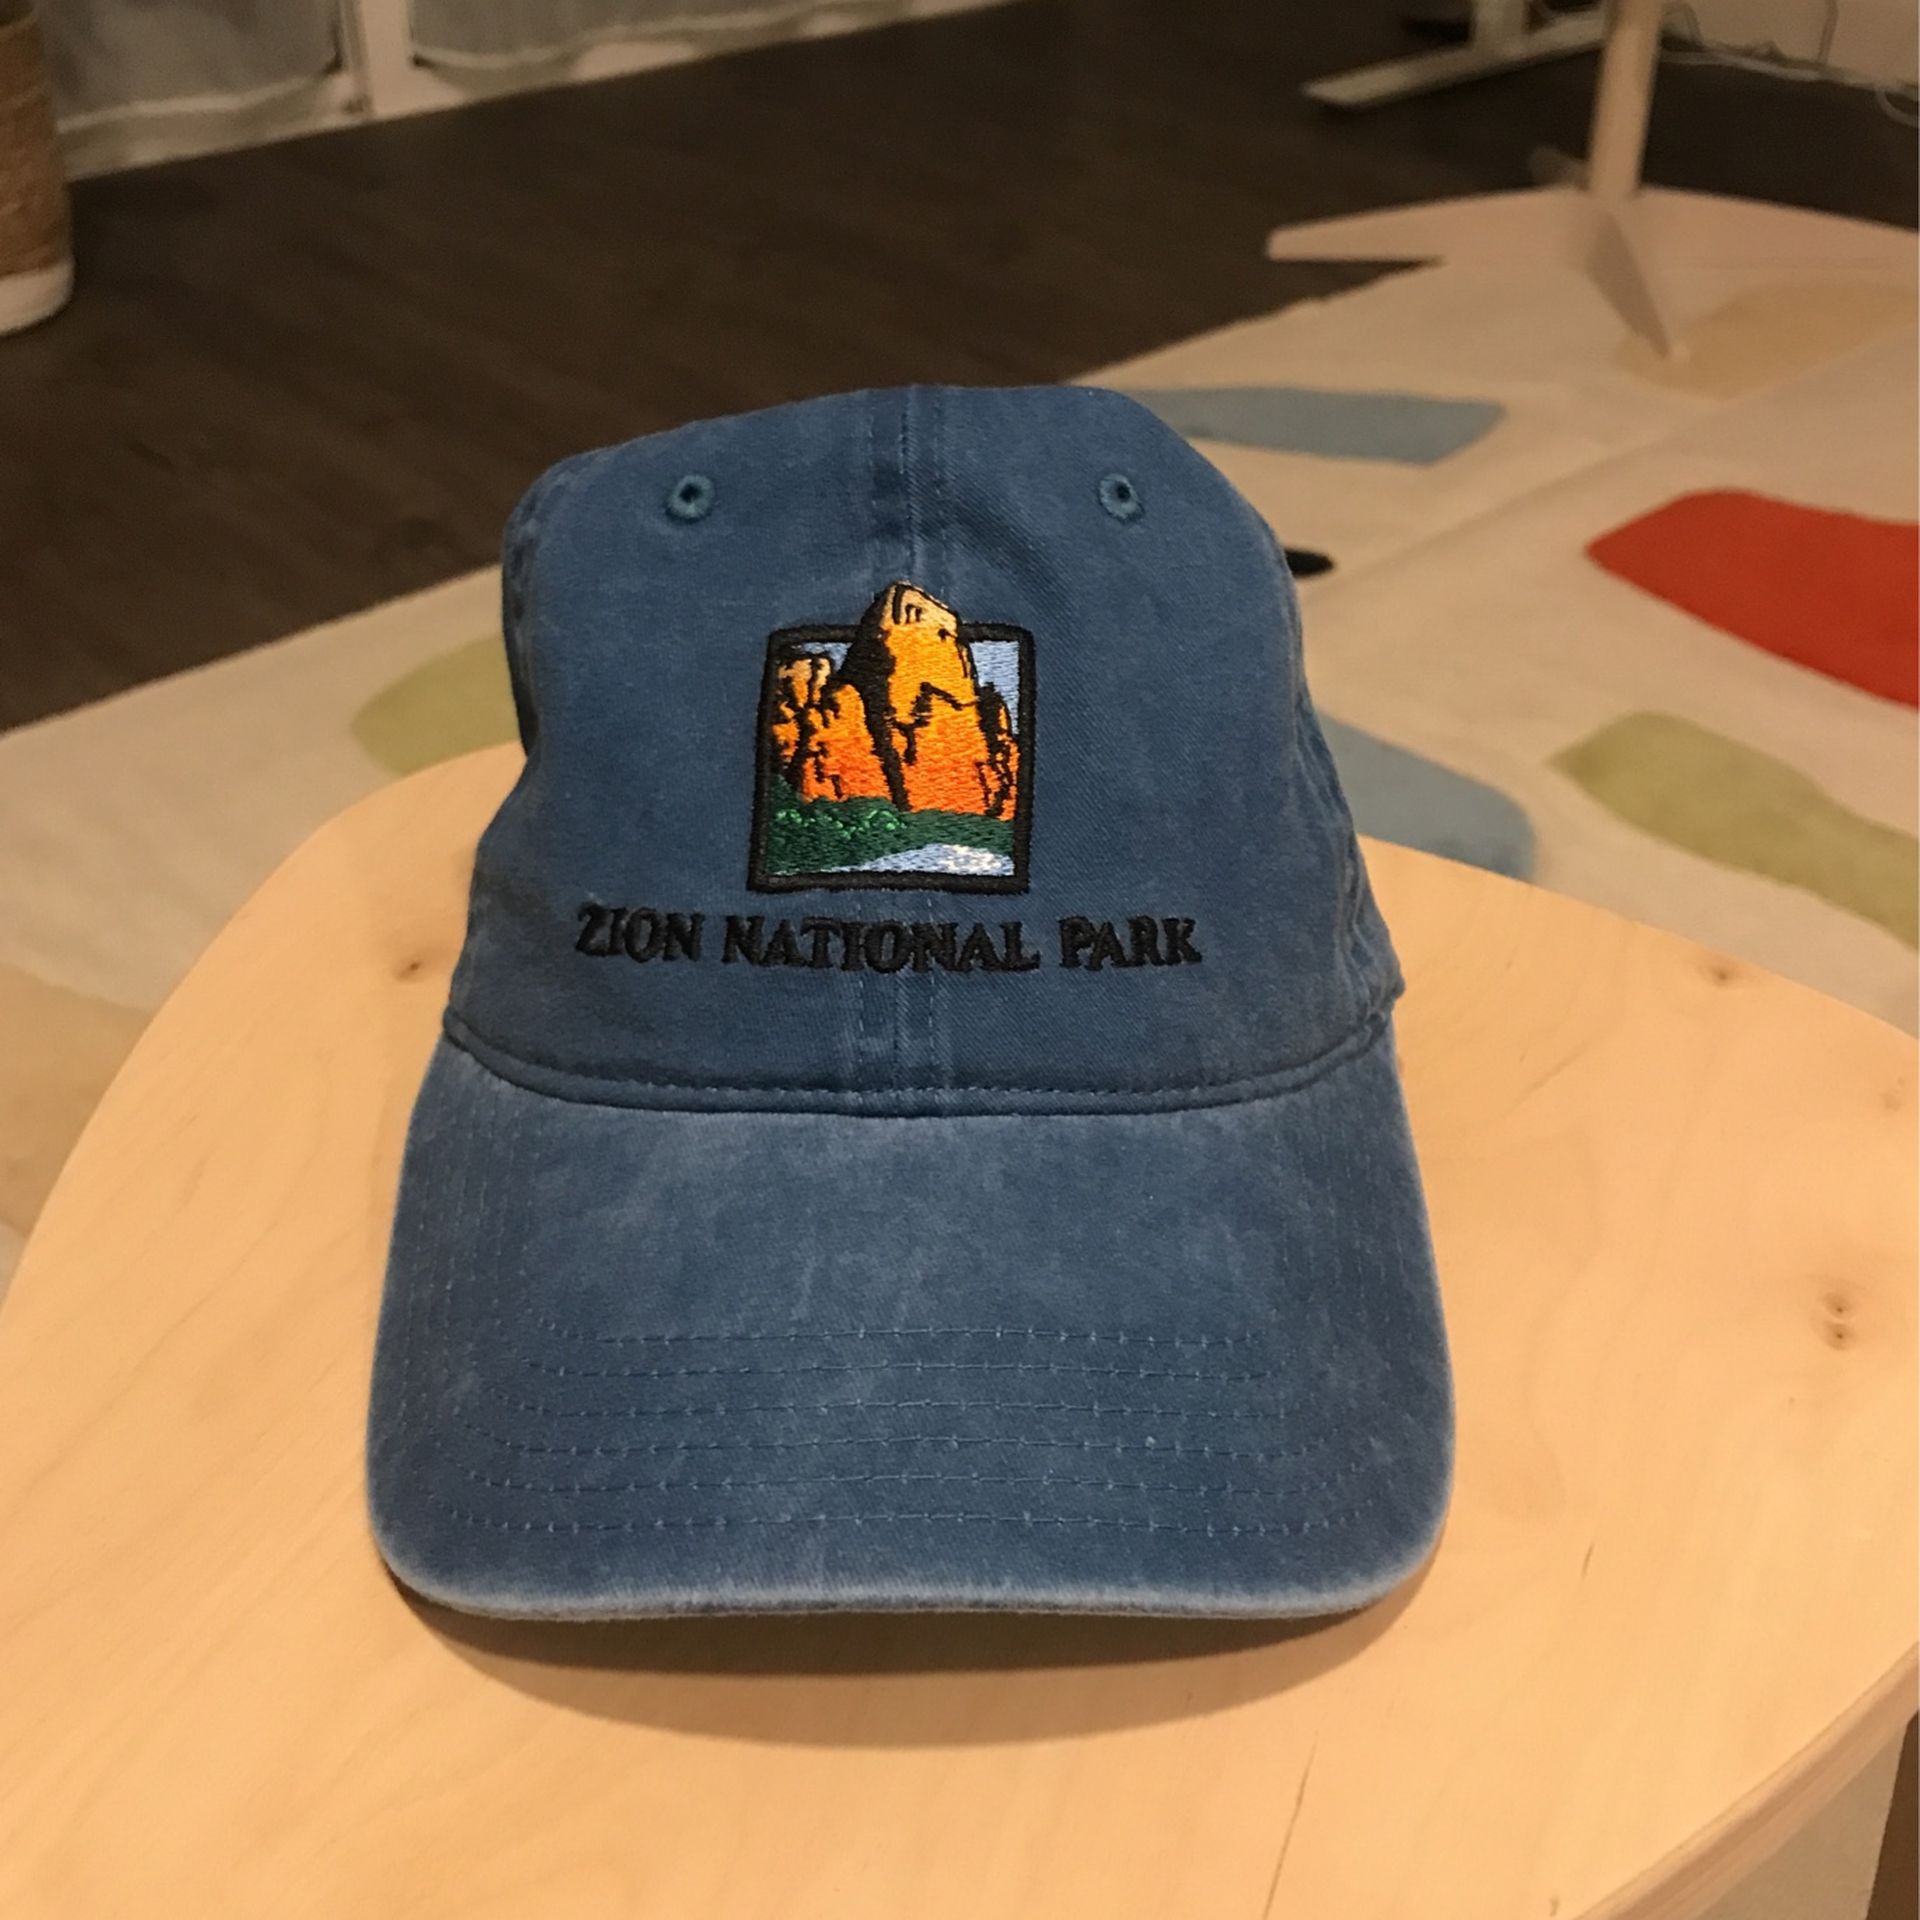 Zion National Park baseball cap